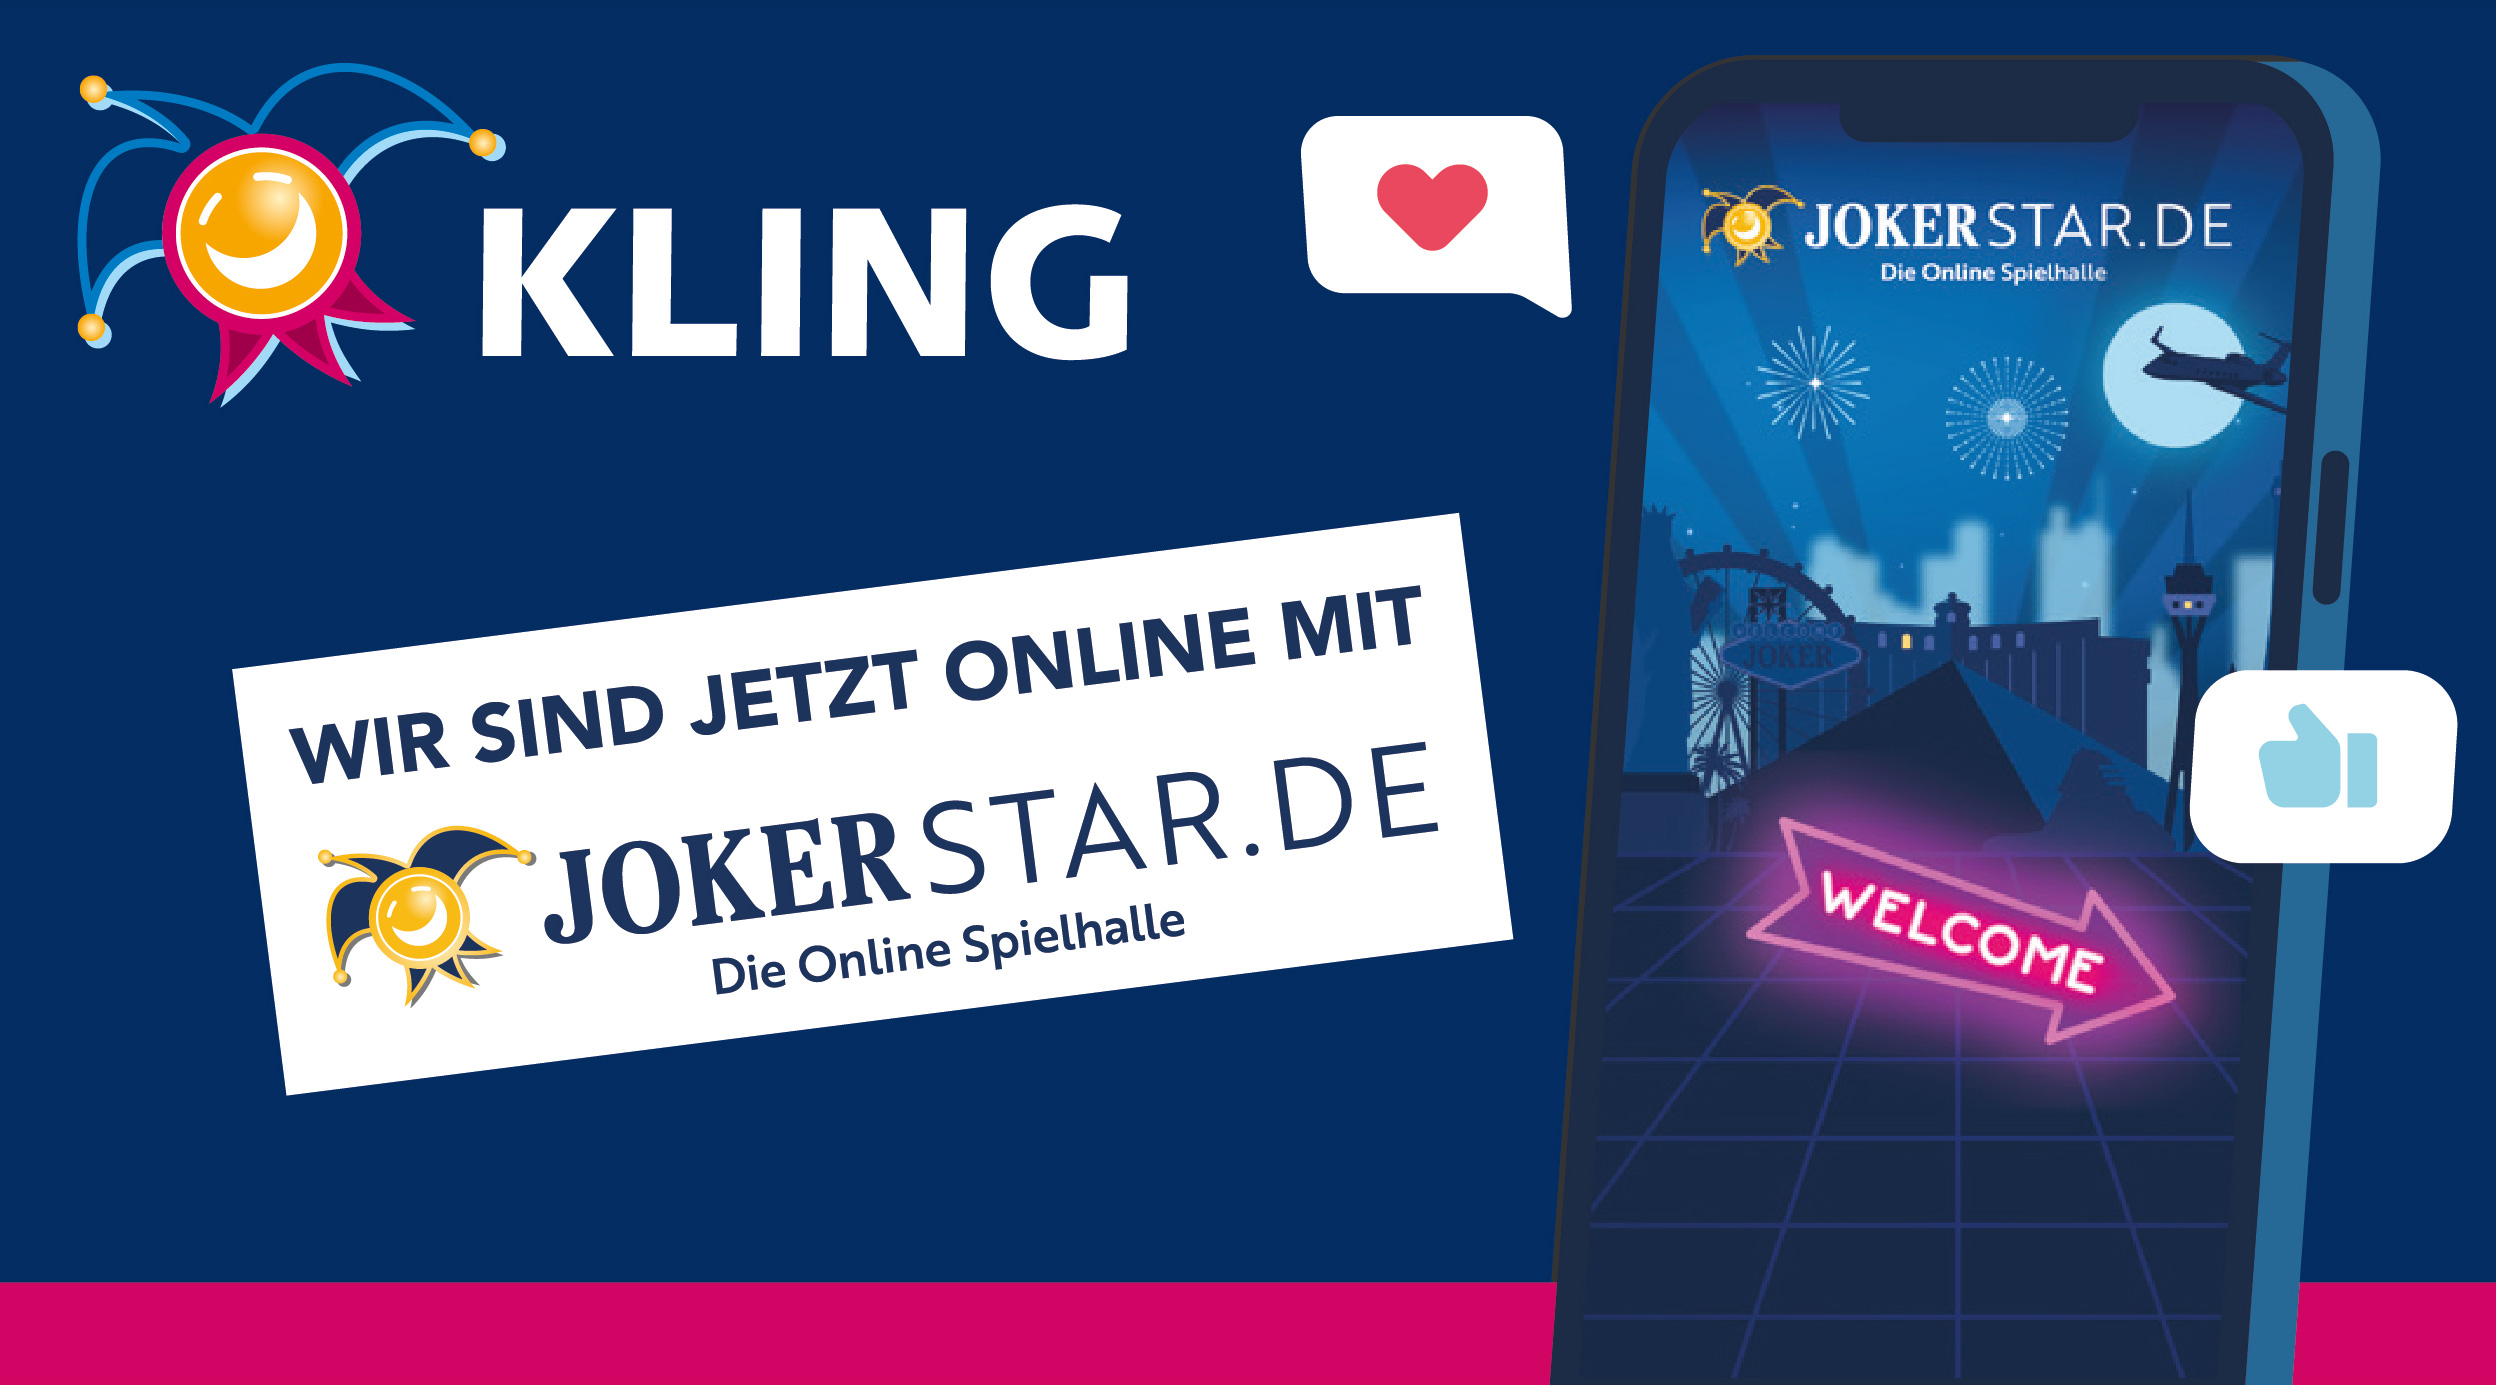 Wir sind jetzt online mit Jokerstar.de – Die Online Spielhalle